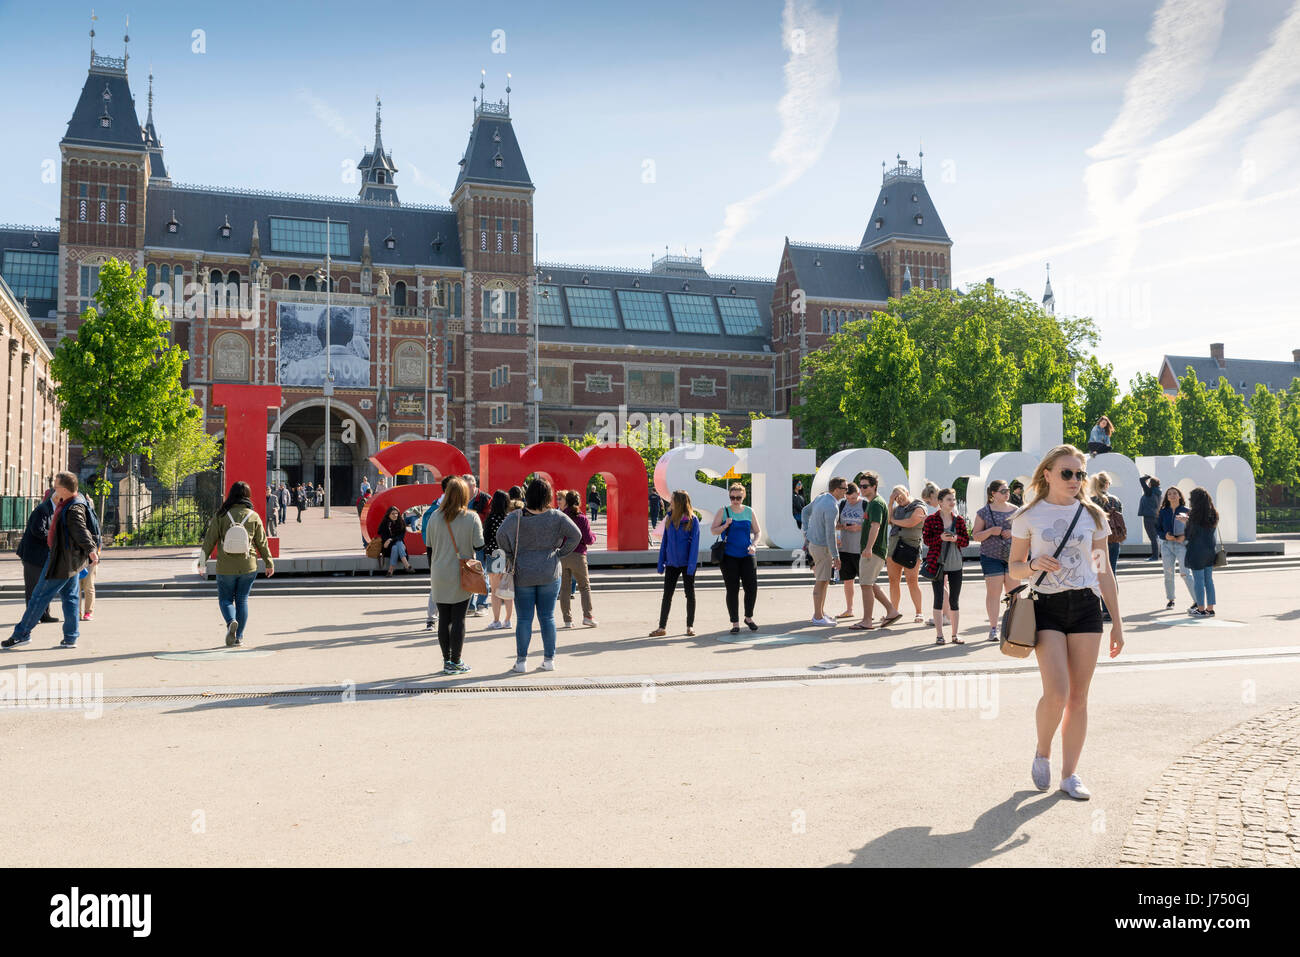 AMSTERDAM, Niederlande - 15. Mai 2017: Eine Präsentation, einen Slogan, eine willkommene Phrase, eine visuelle Symbol... Ich Amsterdam ist ein geniales Wortspiel, h Stockfoto